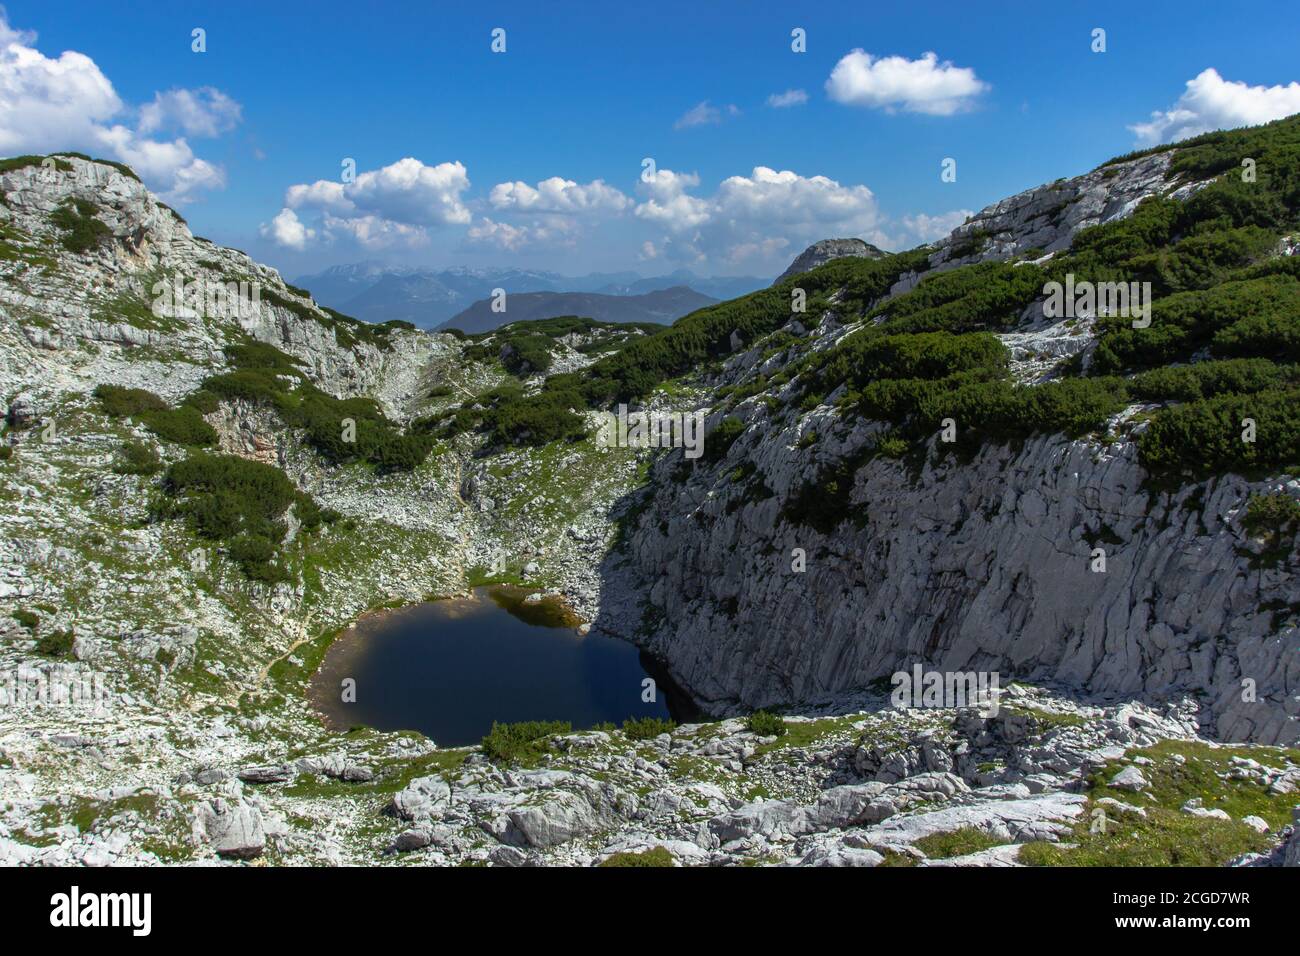 Blick auf felsige Berglandschaft und kleine dunkelgrüne See.Alpine Panorama-Landschaft.Sommerurlaub Reise Hintergrund.Entdecken Sie die Schönheit von Österreich. Stockfoto